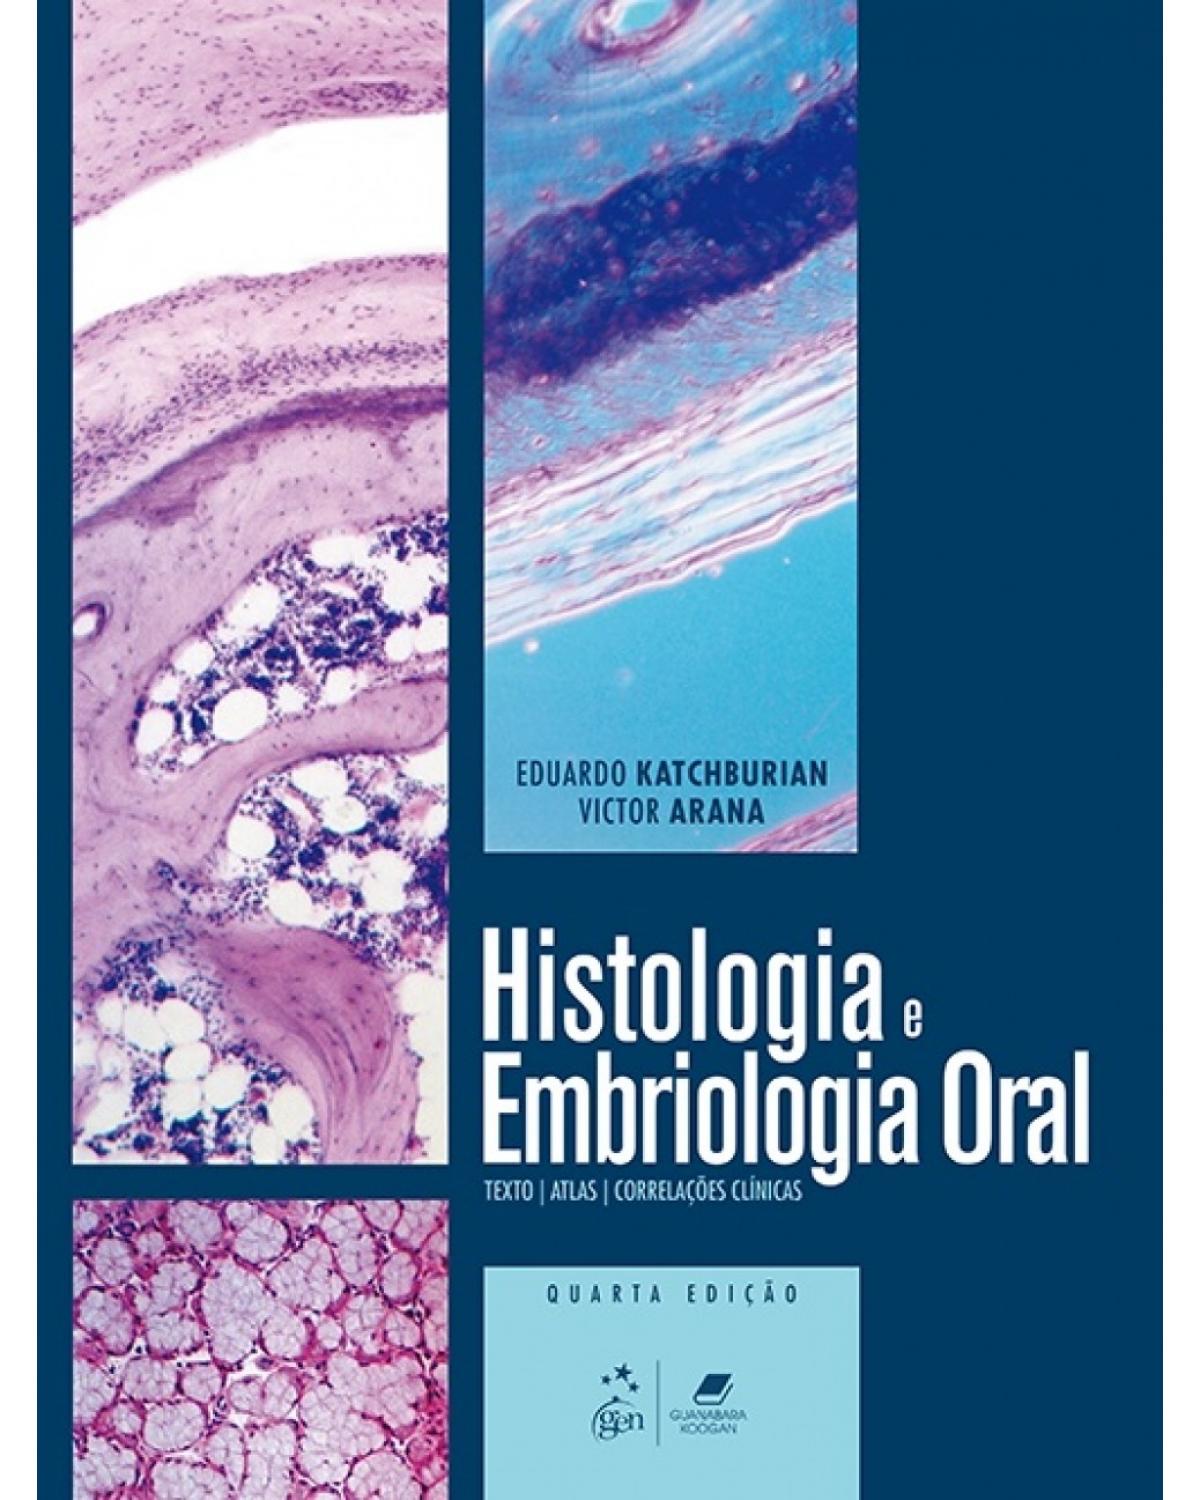 Histologia e embriologia oral - Texto, atlas, correlações clínicas - 4ª Edição | 2017